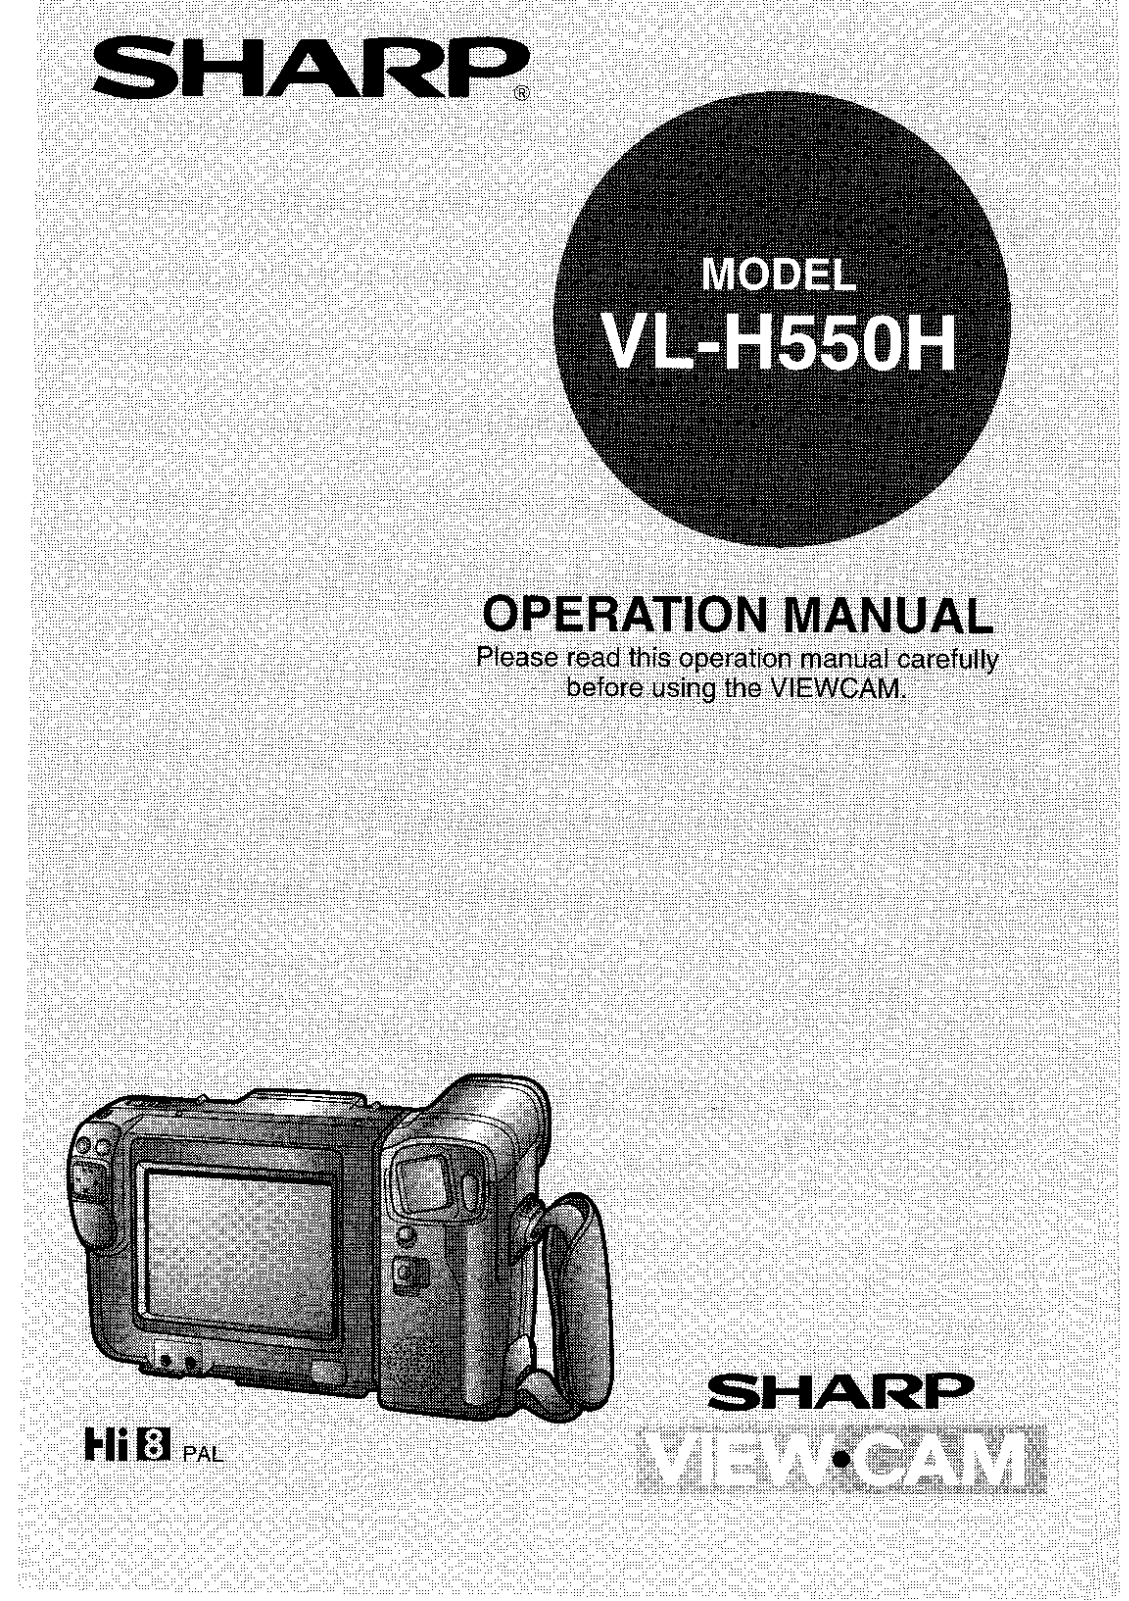 Sharp VL-H550H Manual